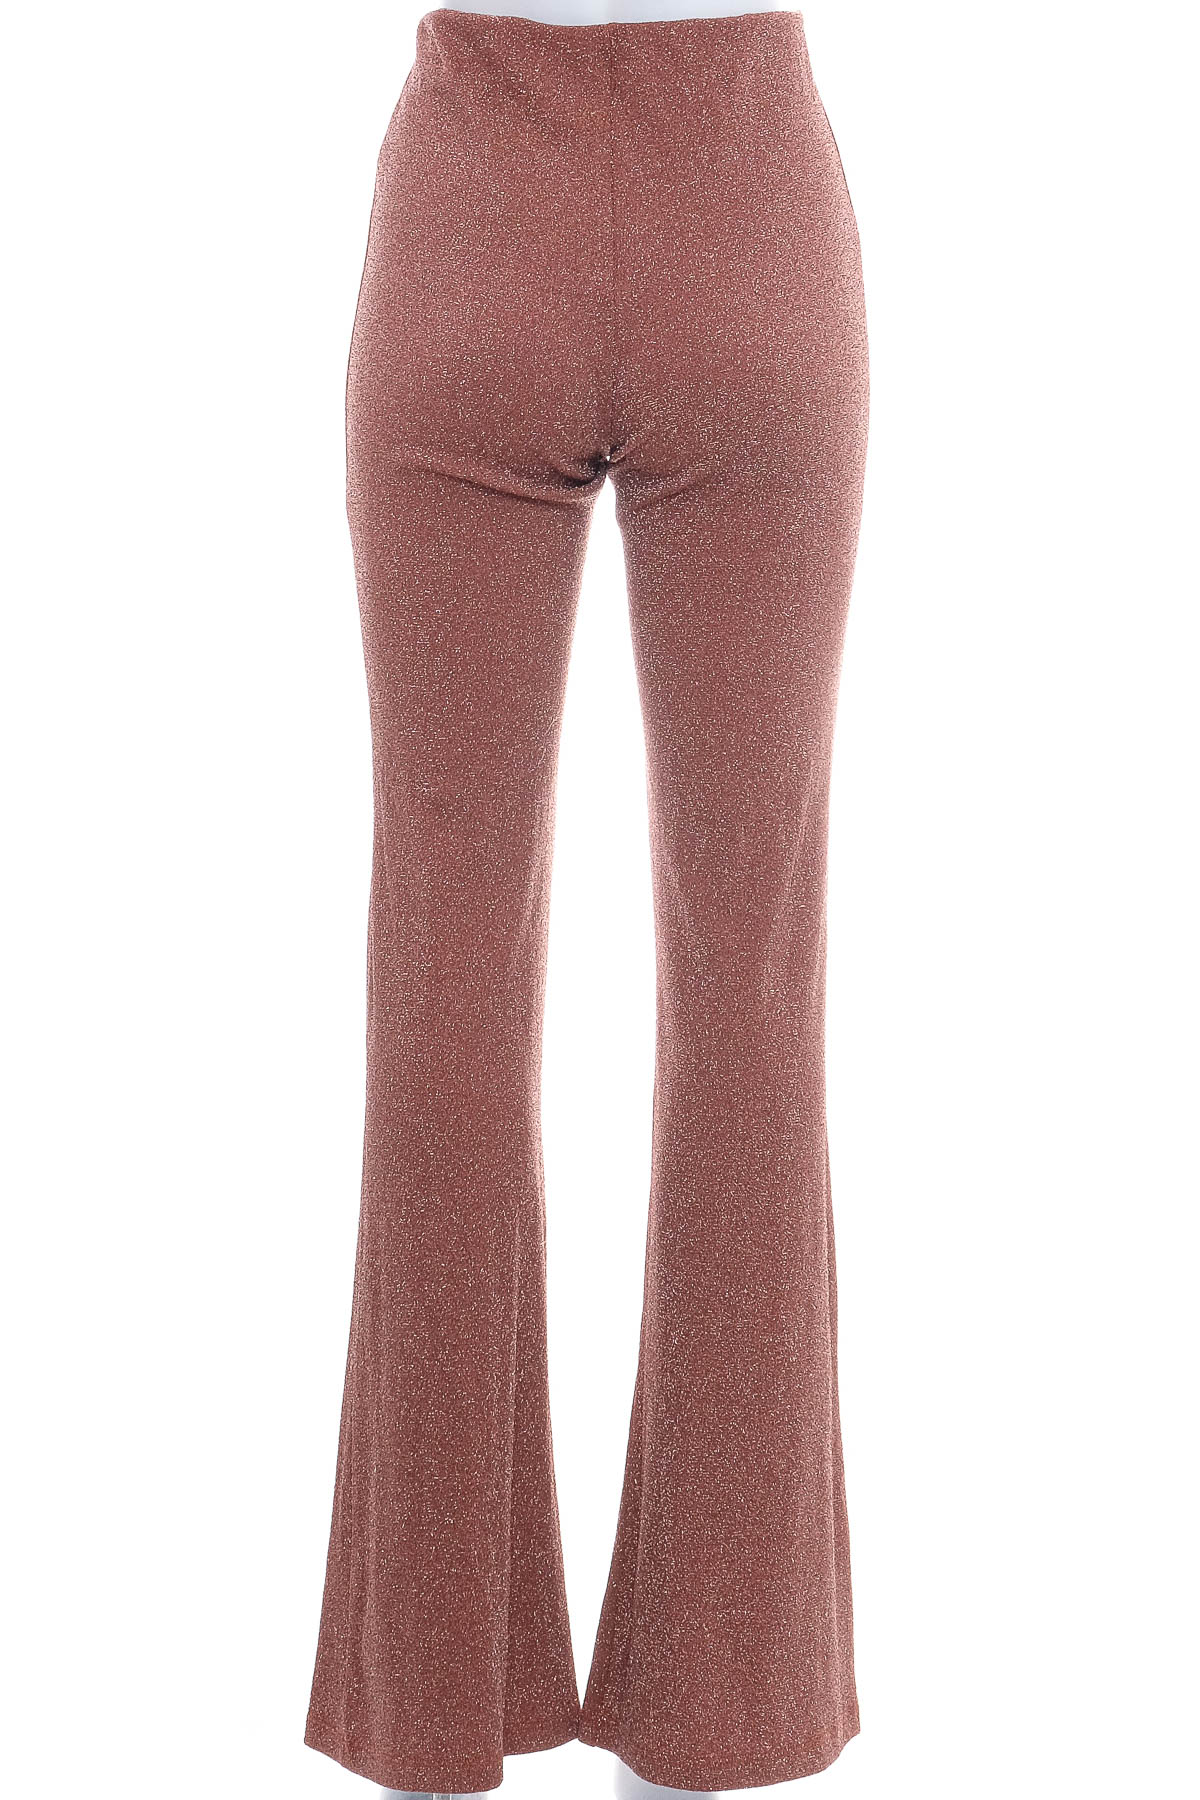 Pantaloni de damă - SoAllure - 1